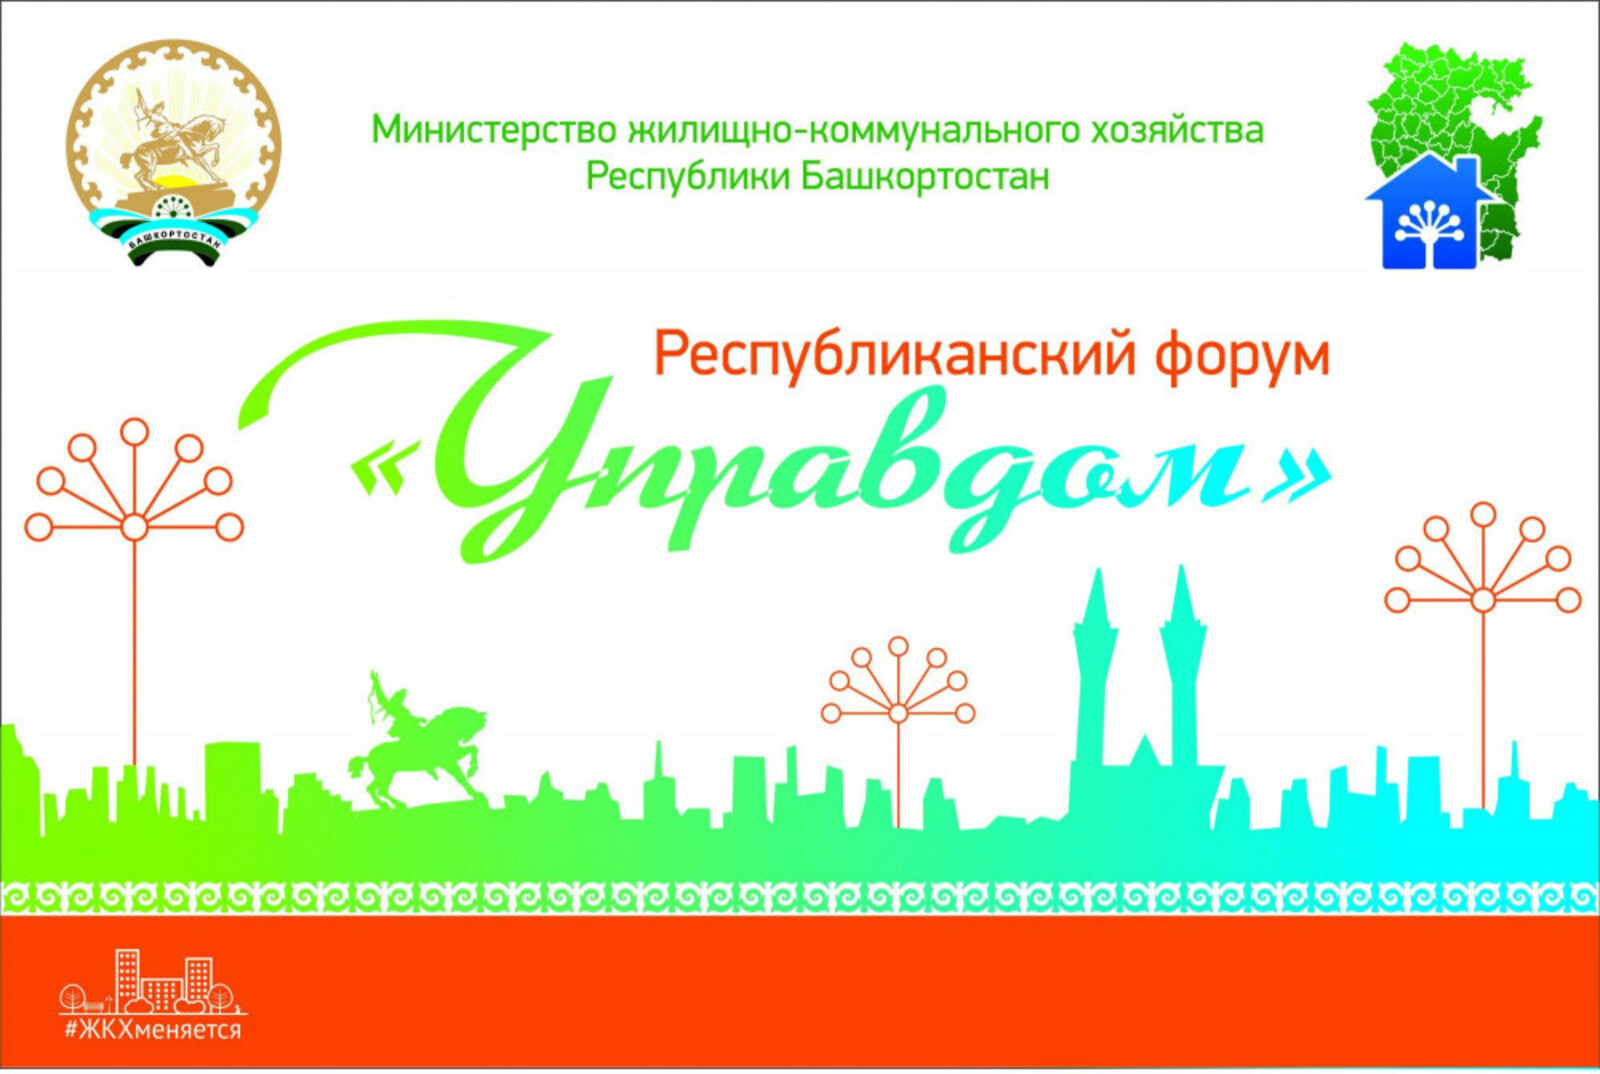 Глава региона Радий Хабиров поручил во всех городах и района Башкортостана провести муниципальные форумы «Управдом», в Гафурийском районе уже назначена дата